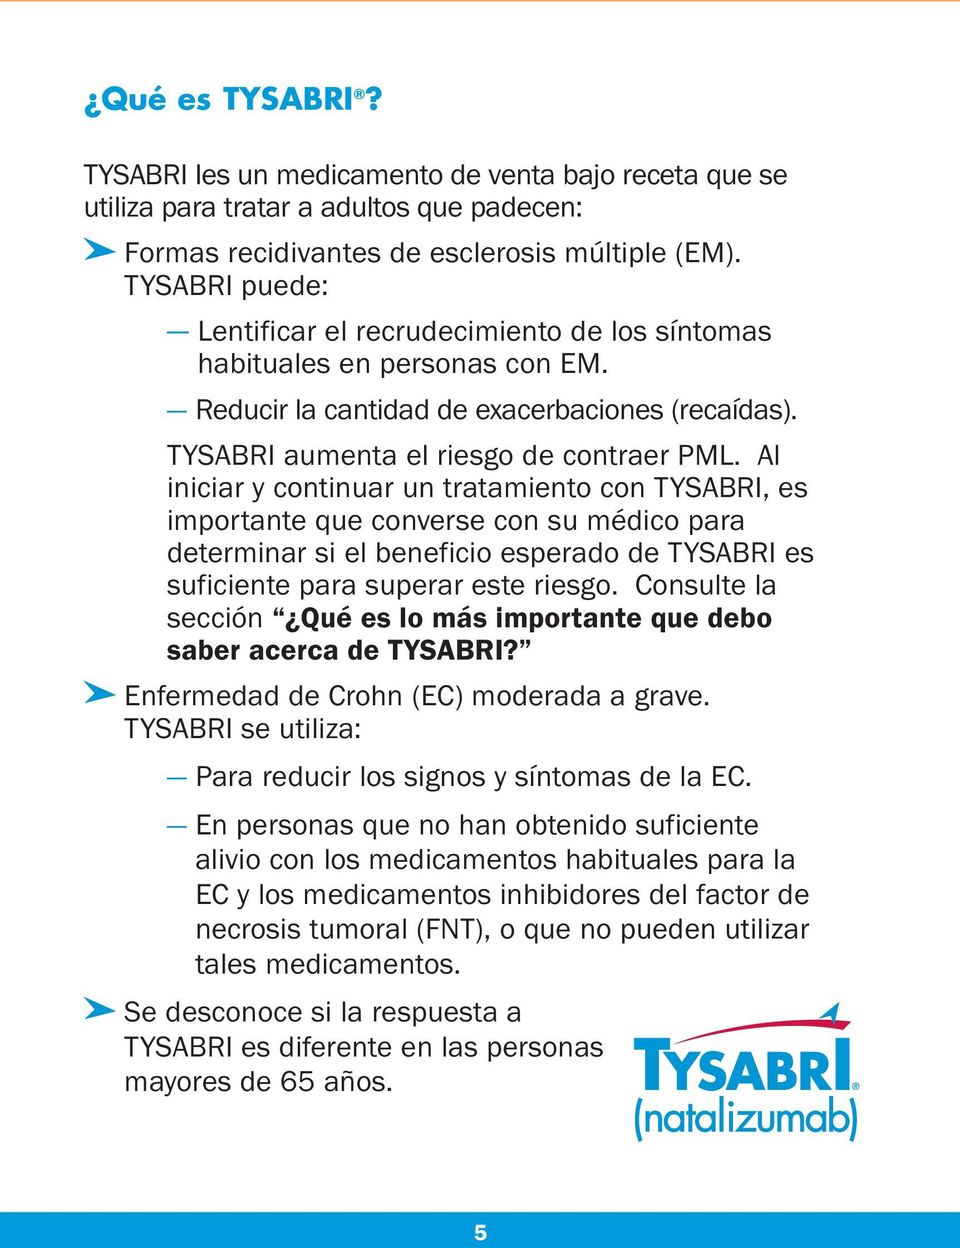 Al iniciar y continuar un tratamiento con TYSABRI, es importante que converse con su médico para determinar si el beneficio esperado de TYSABRI es suficiente para superar este riesgo.